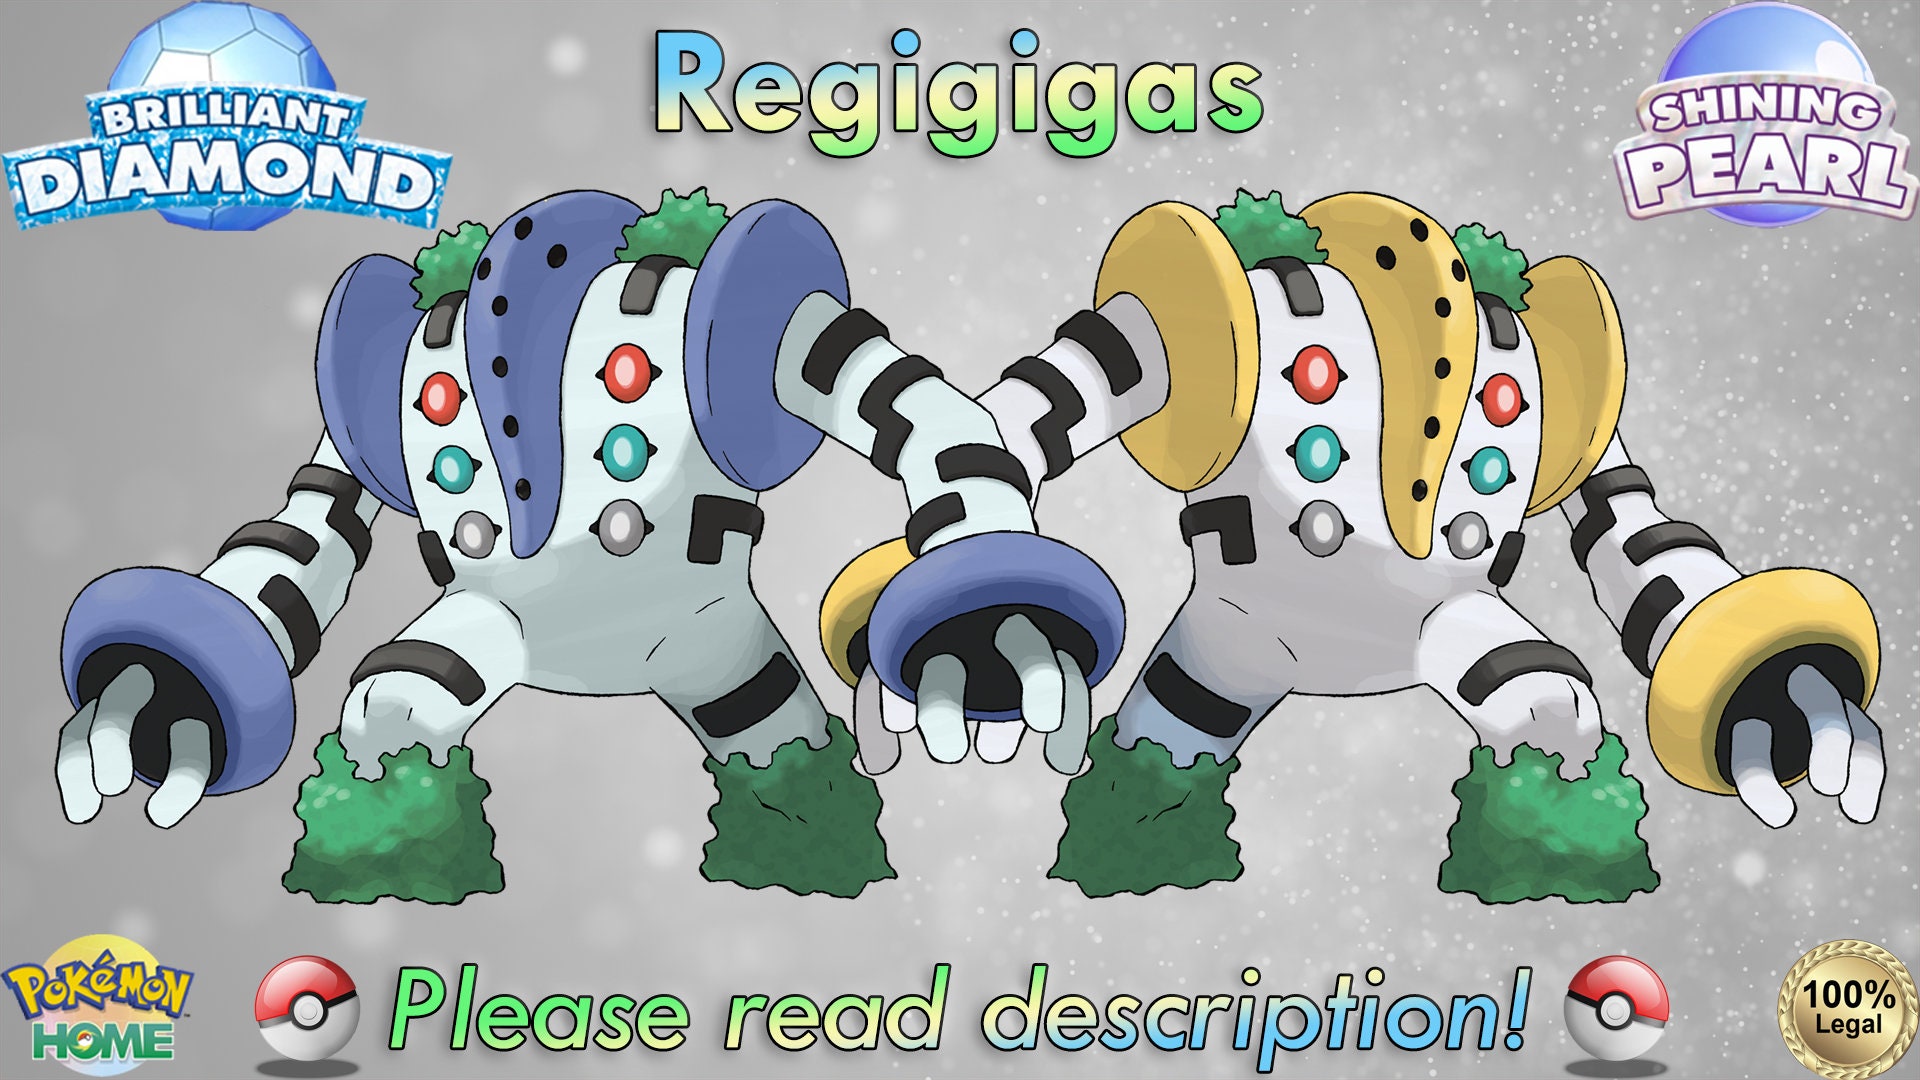 Gotta love shiny Regigigas : r/pokemongo